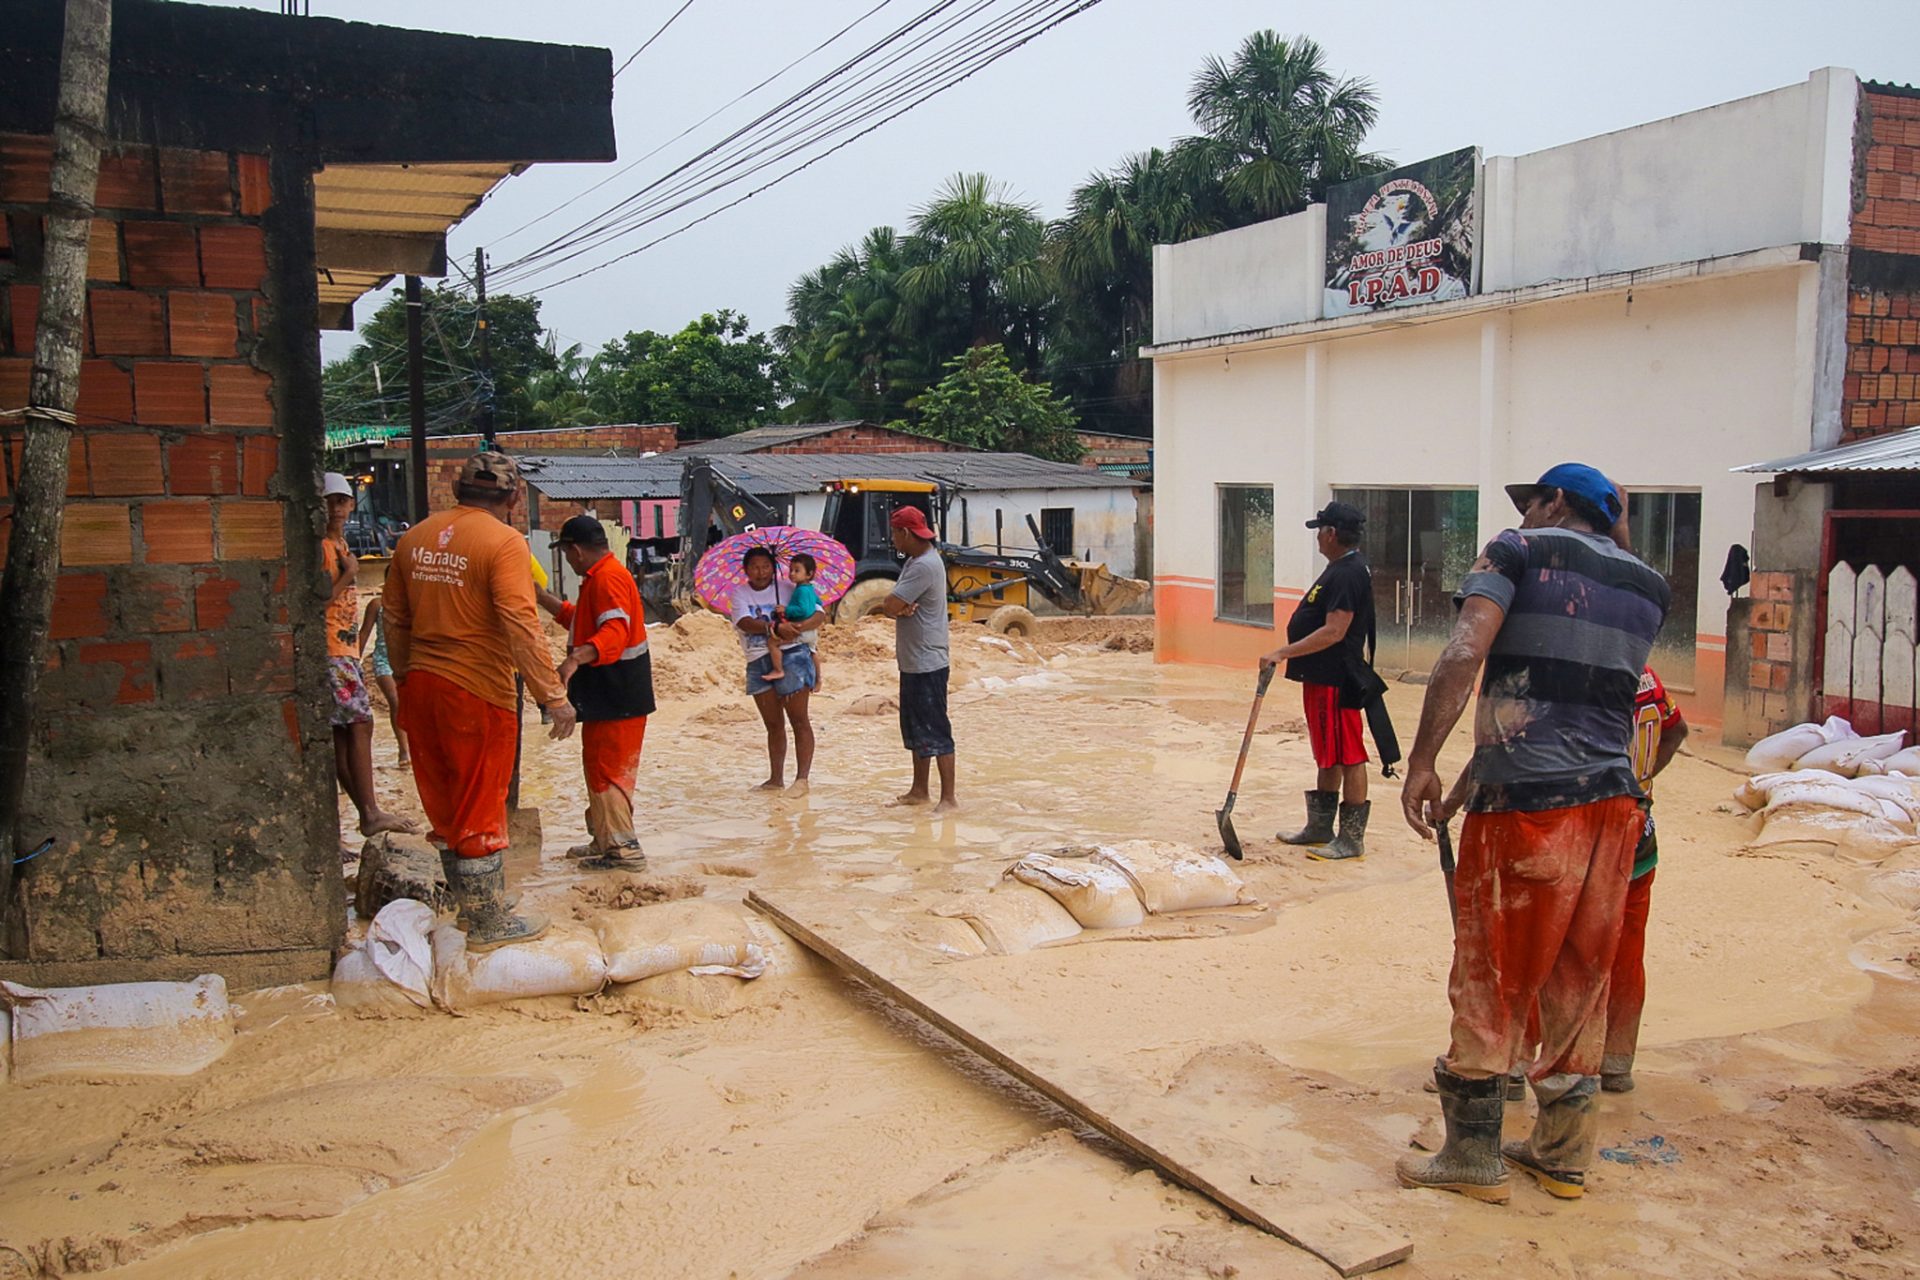 Atendimento as famílias no Monte das Oliveiras devido às fortes chuvas em Manaus - Foto: Foto: Márcio Melo / Seminf